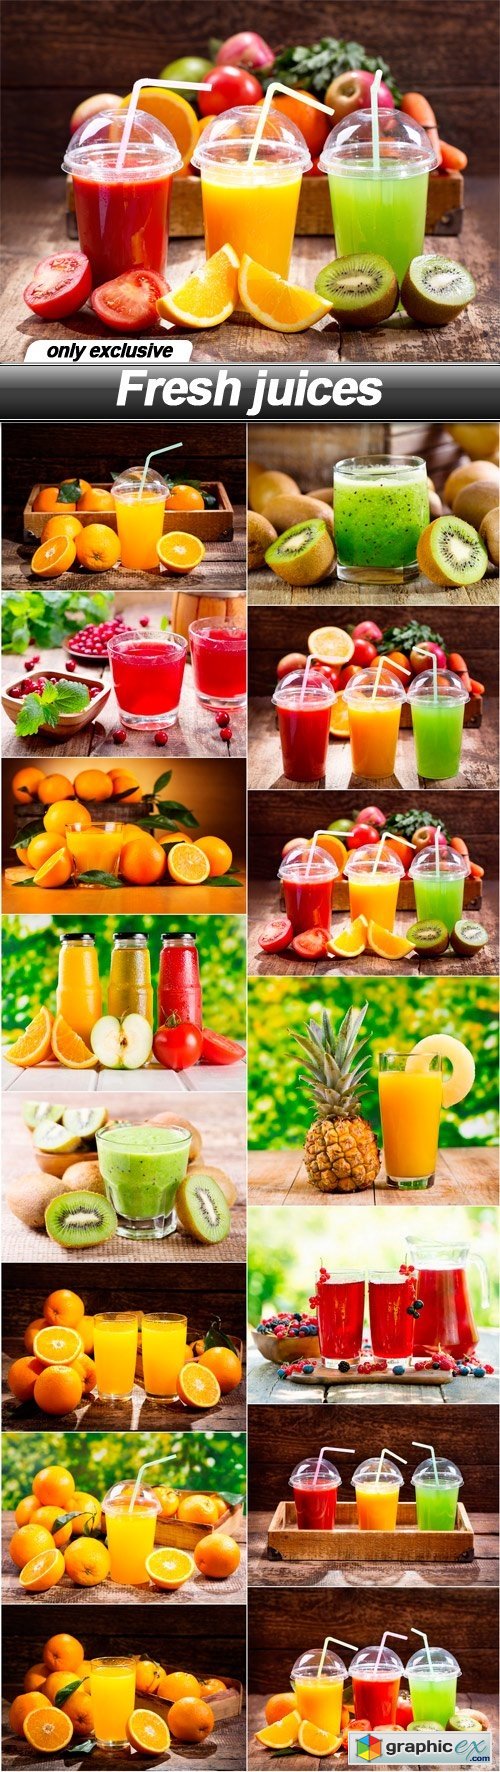 Fresh juices - 15 UHQ JPEG